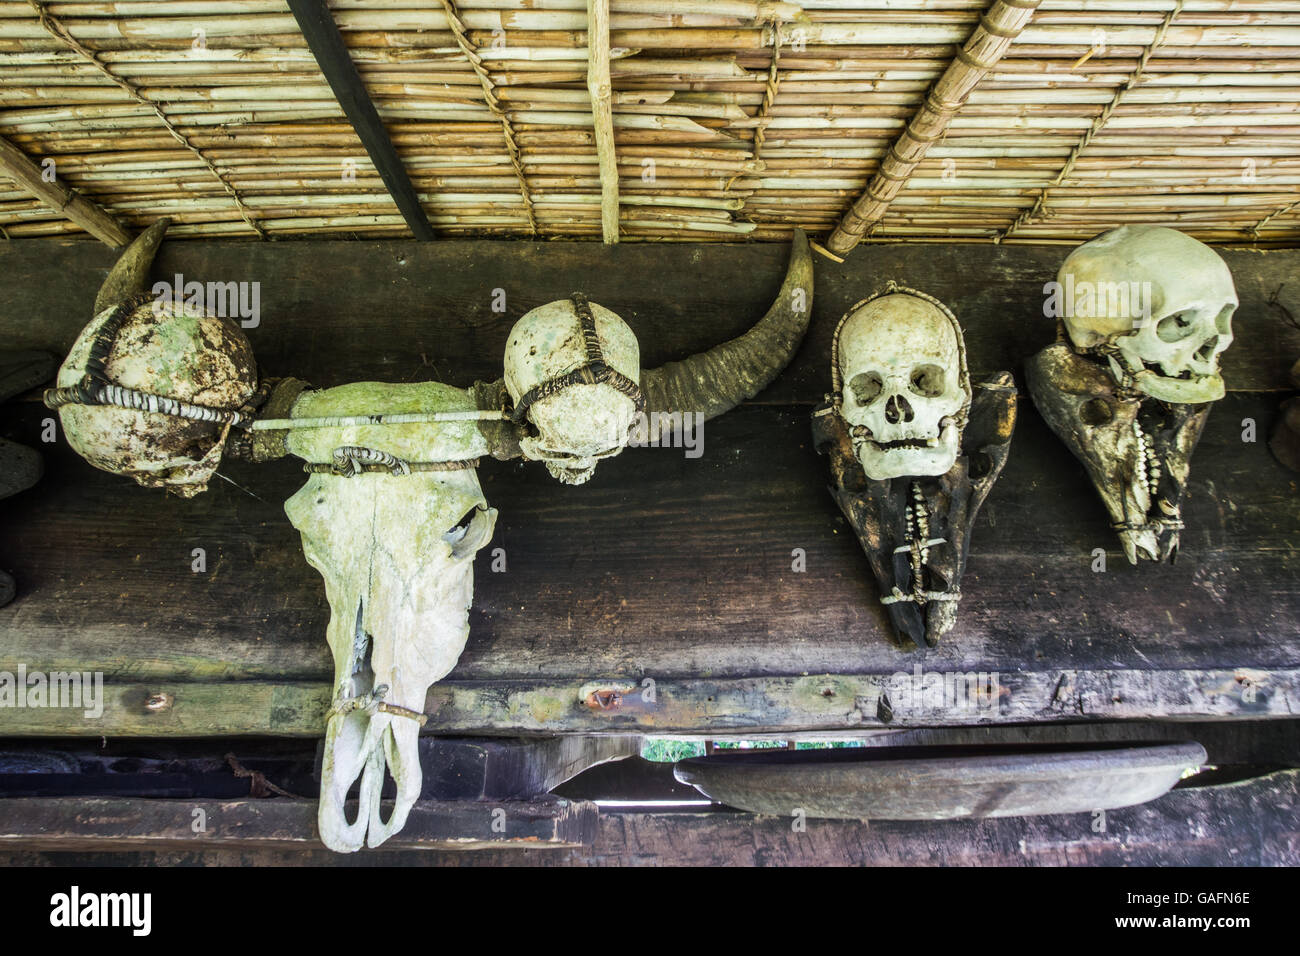 Crâne d'Ifugao Igorot Trophy Changit - pendant des siècles, les tribus autochtones de la région des montagnes de la Cordillères des Philippines s Banque D'Images